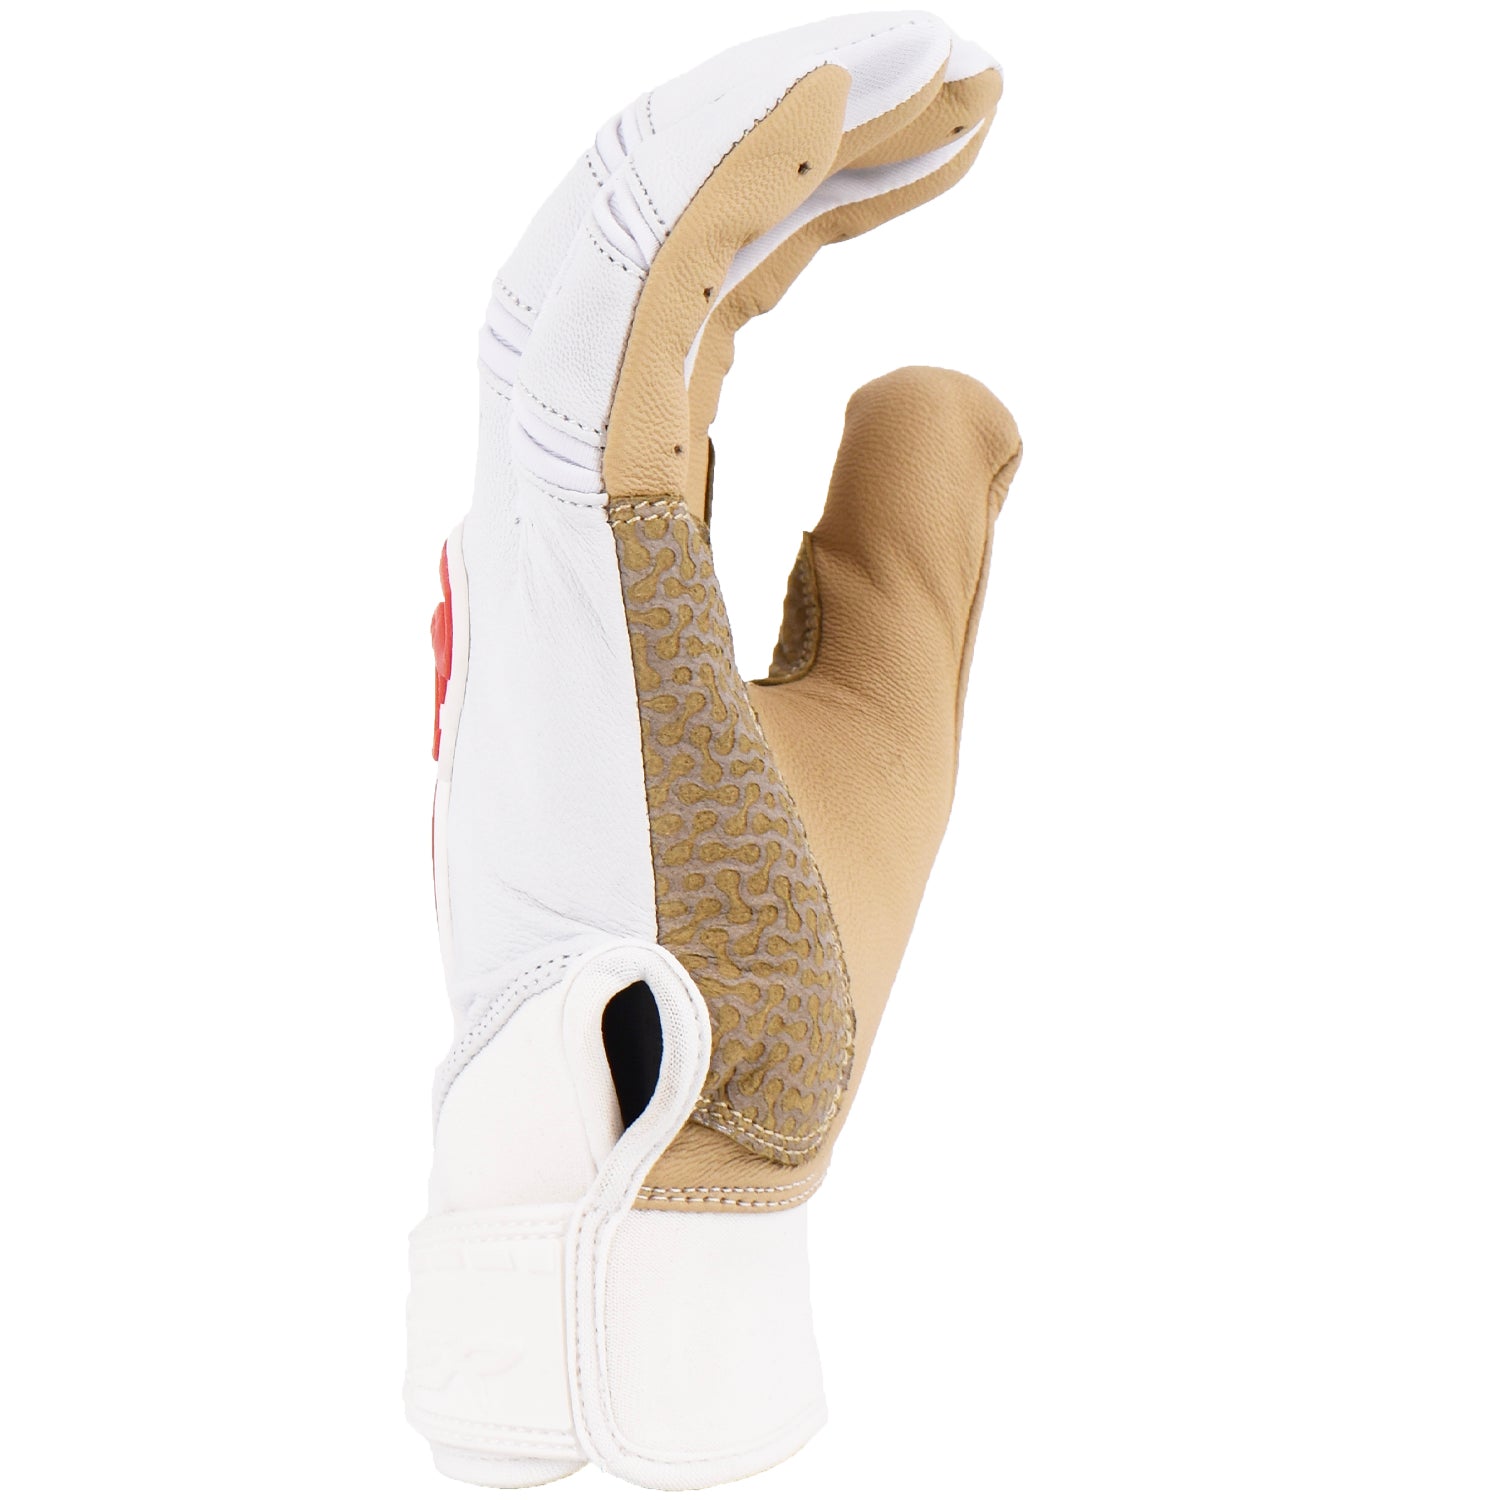 Viper Grindstone Short Cuff Batting Glove - White/Tan/Red